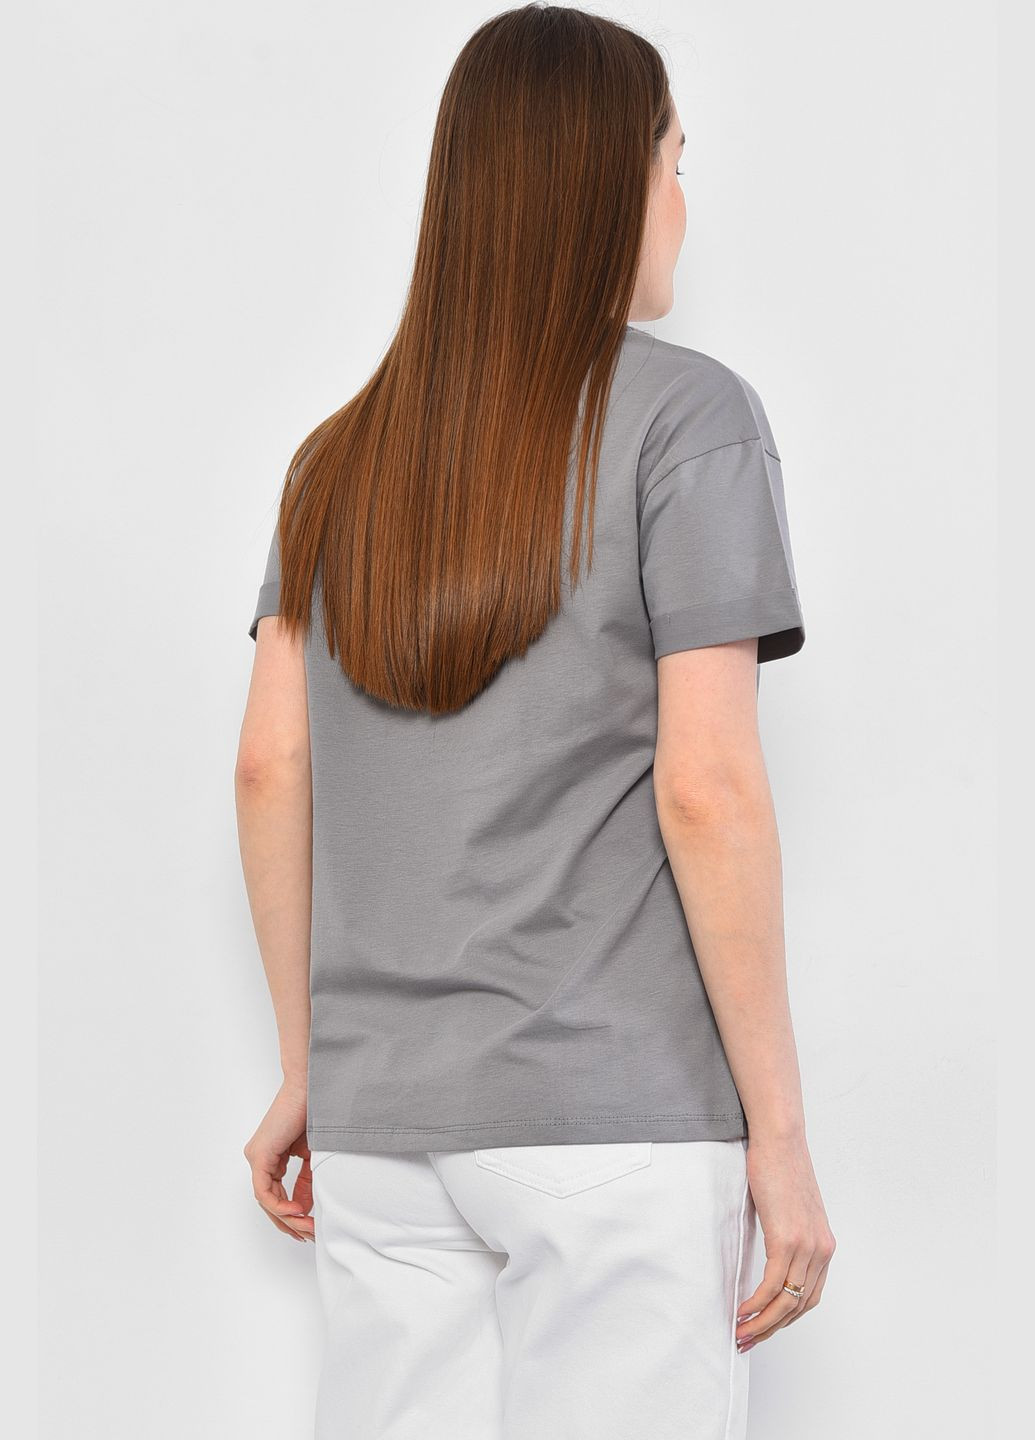 Сіра літня футболка жіноча сірого кольору Let's Shop